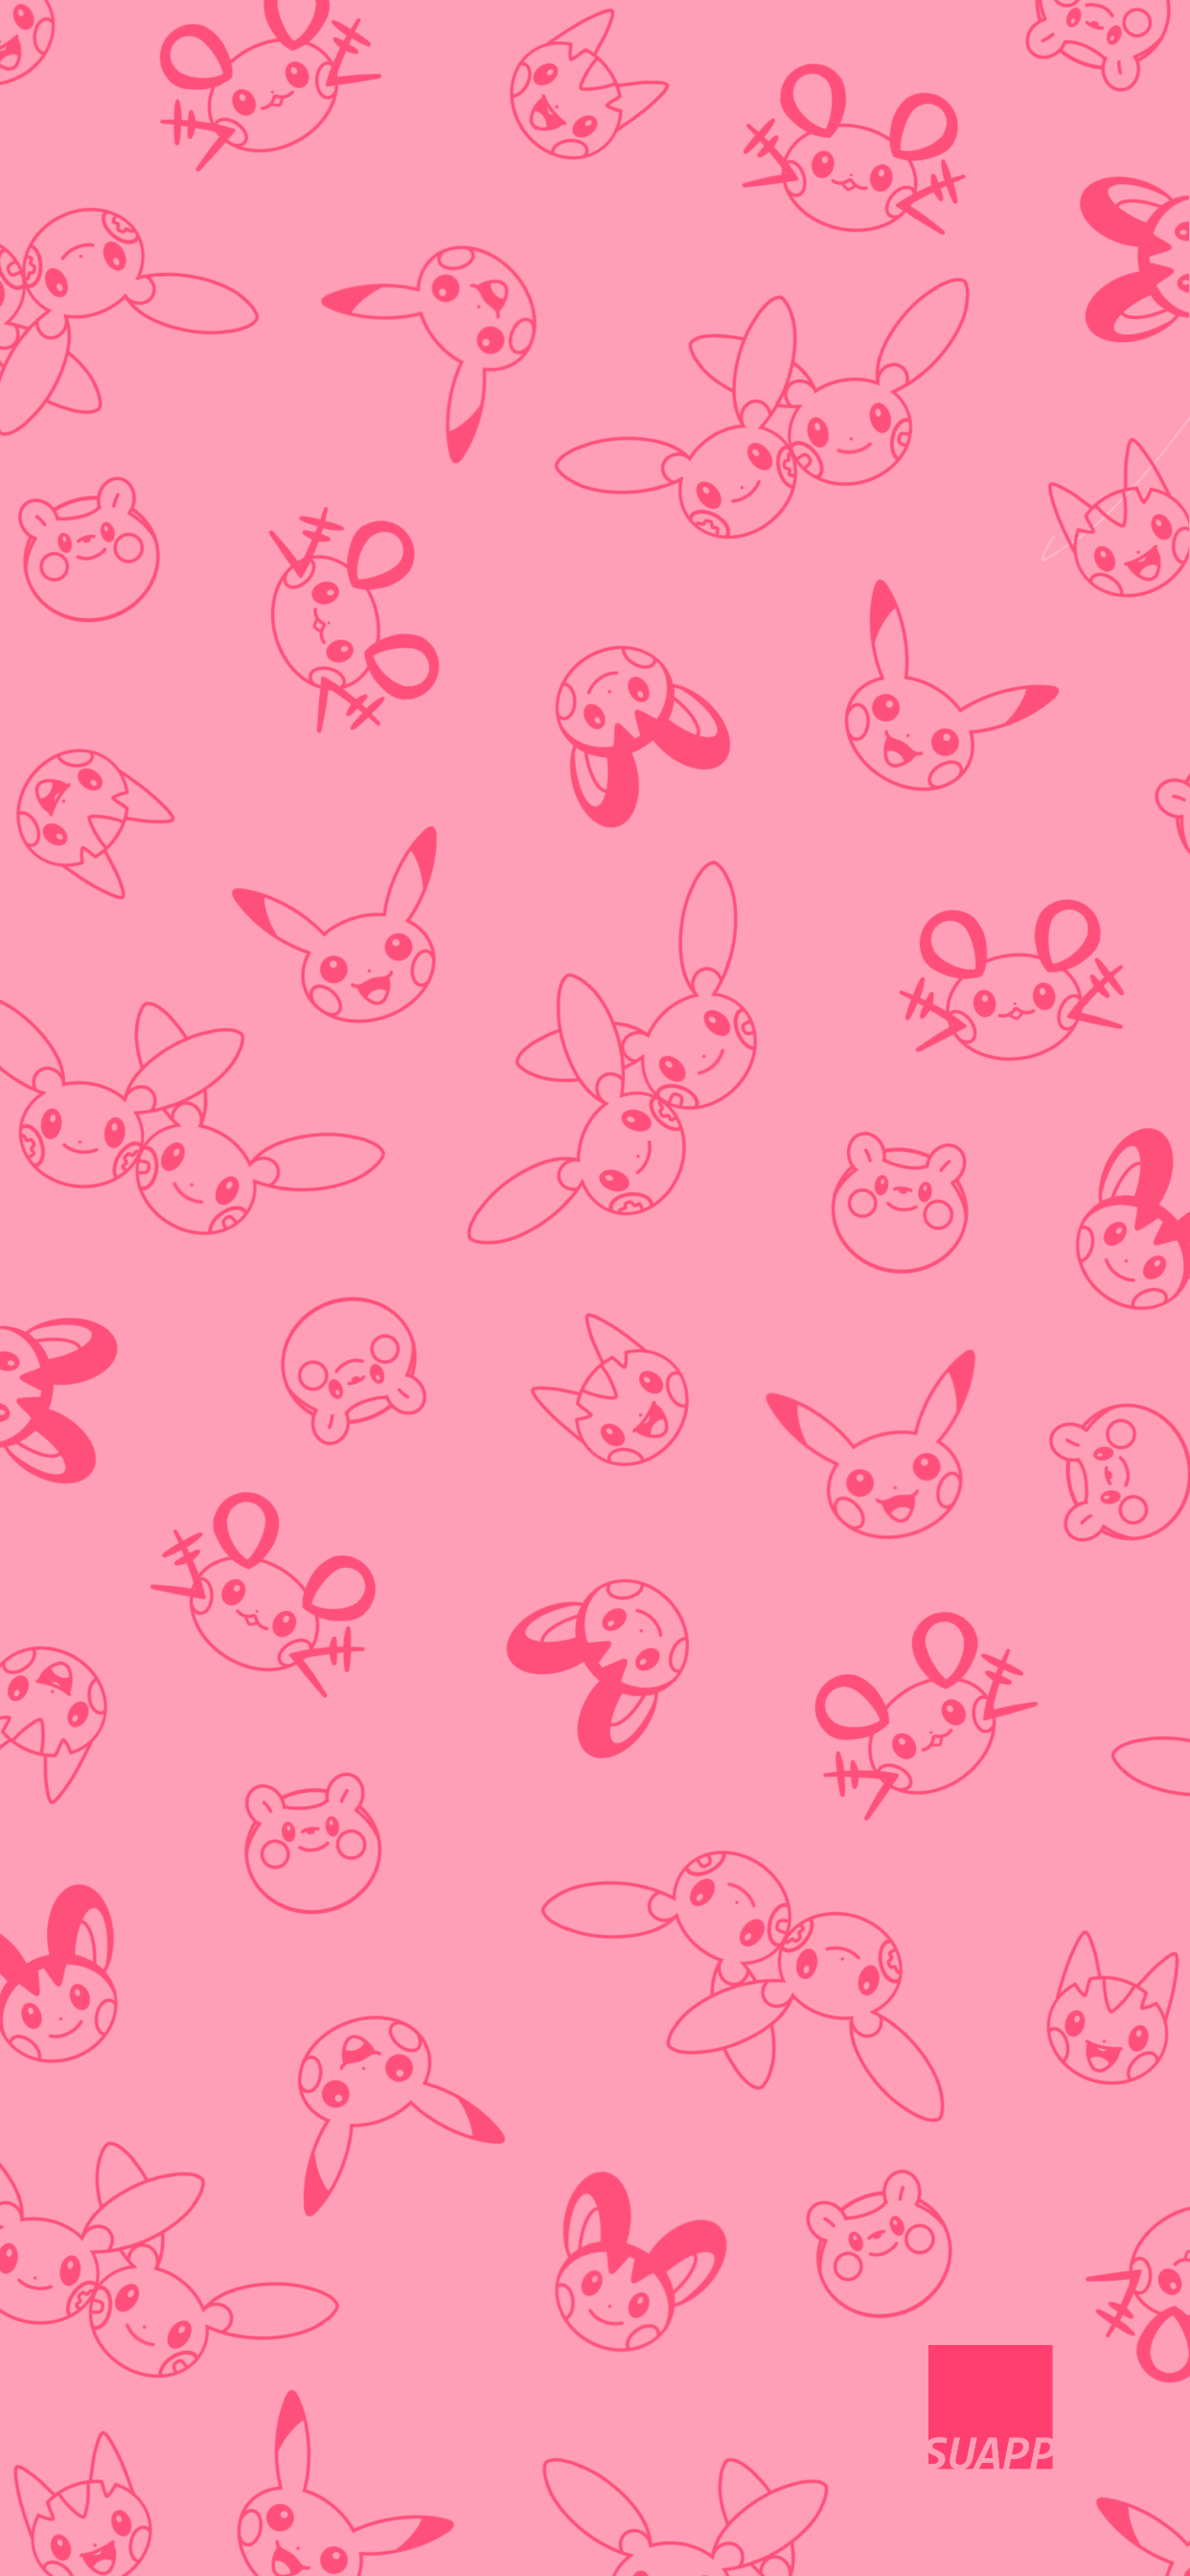 Electric Pokemon Wallpaper Pattern Version. Pikachu wallpaper iphone, Pokemon background, Pikachu wallpaper